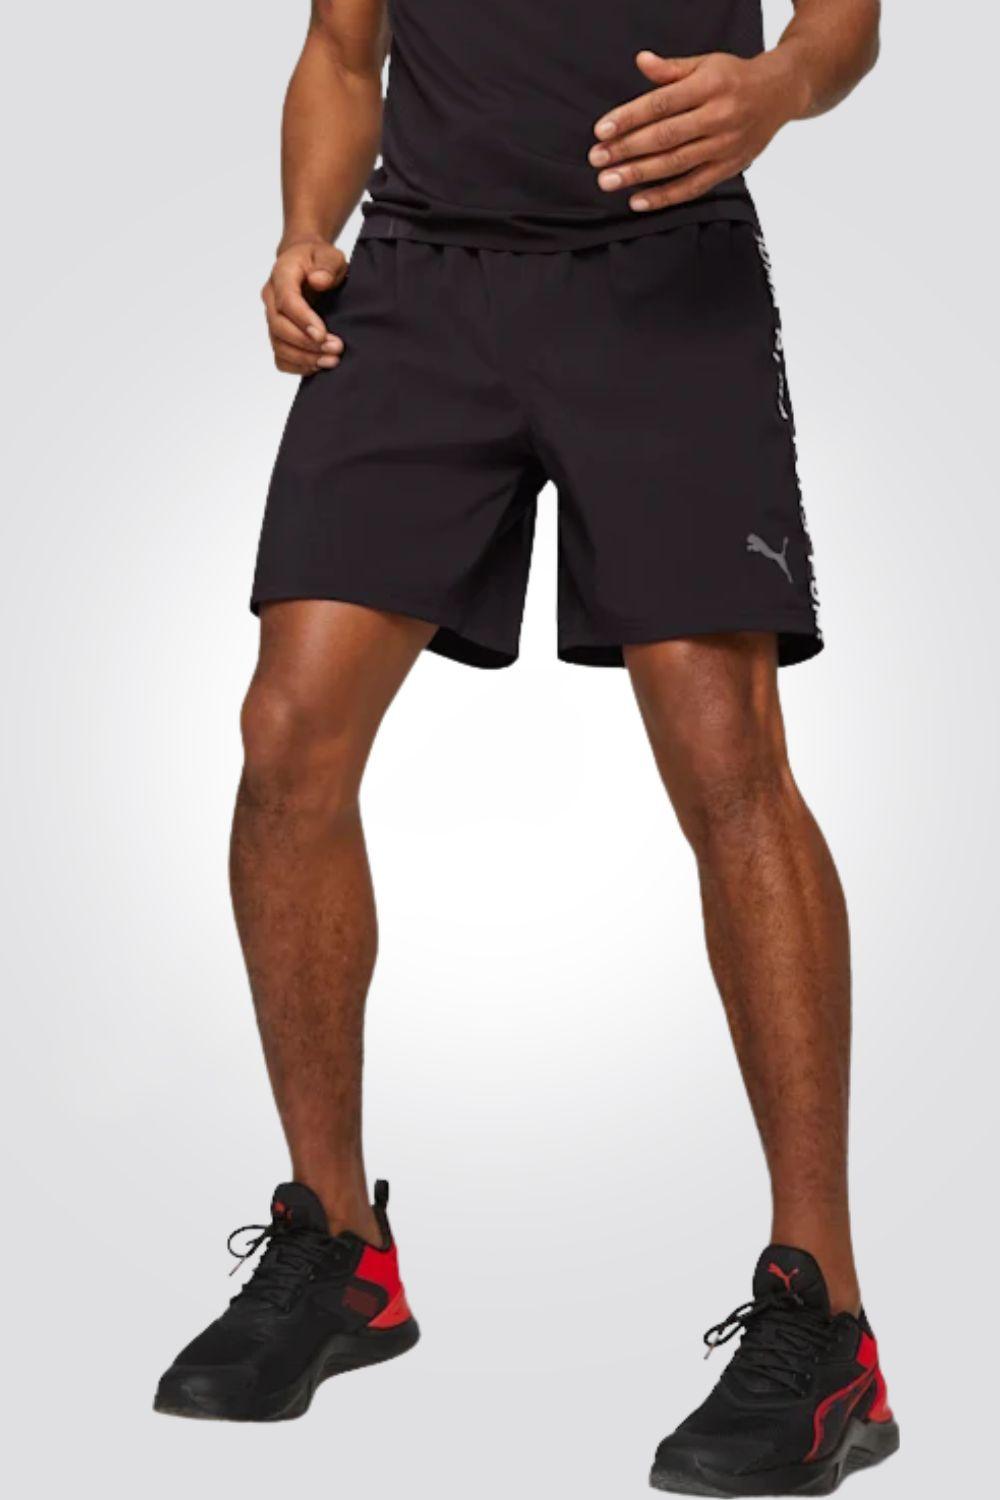 PUMA - מכנסיים קצרים FIT 7 TAPED WOV לגבר בצבע שחור - MASHBIR//365